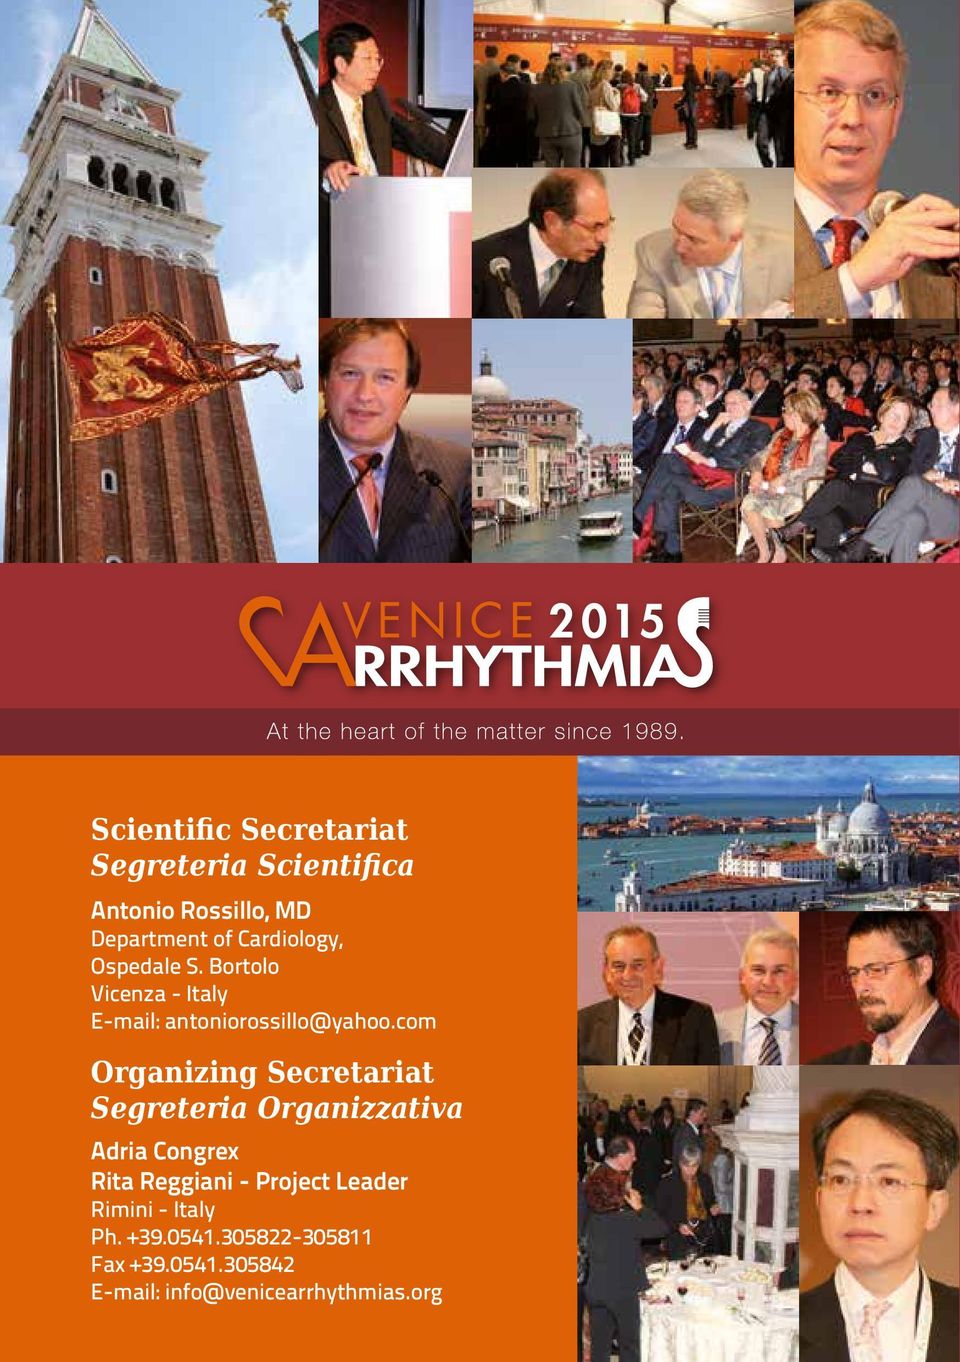 com Organizing Secretariat Segreteria Organizzativa Adria Congrex Rita Reggiani -